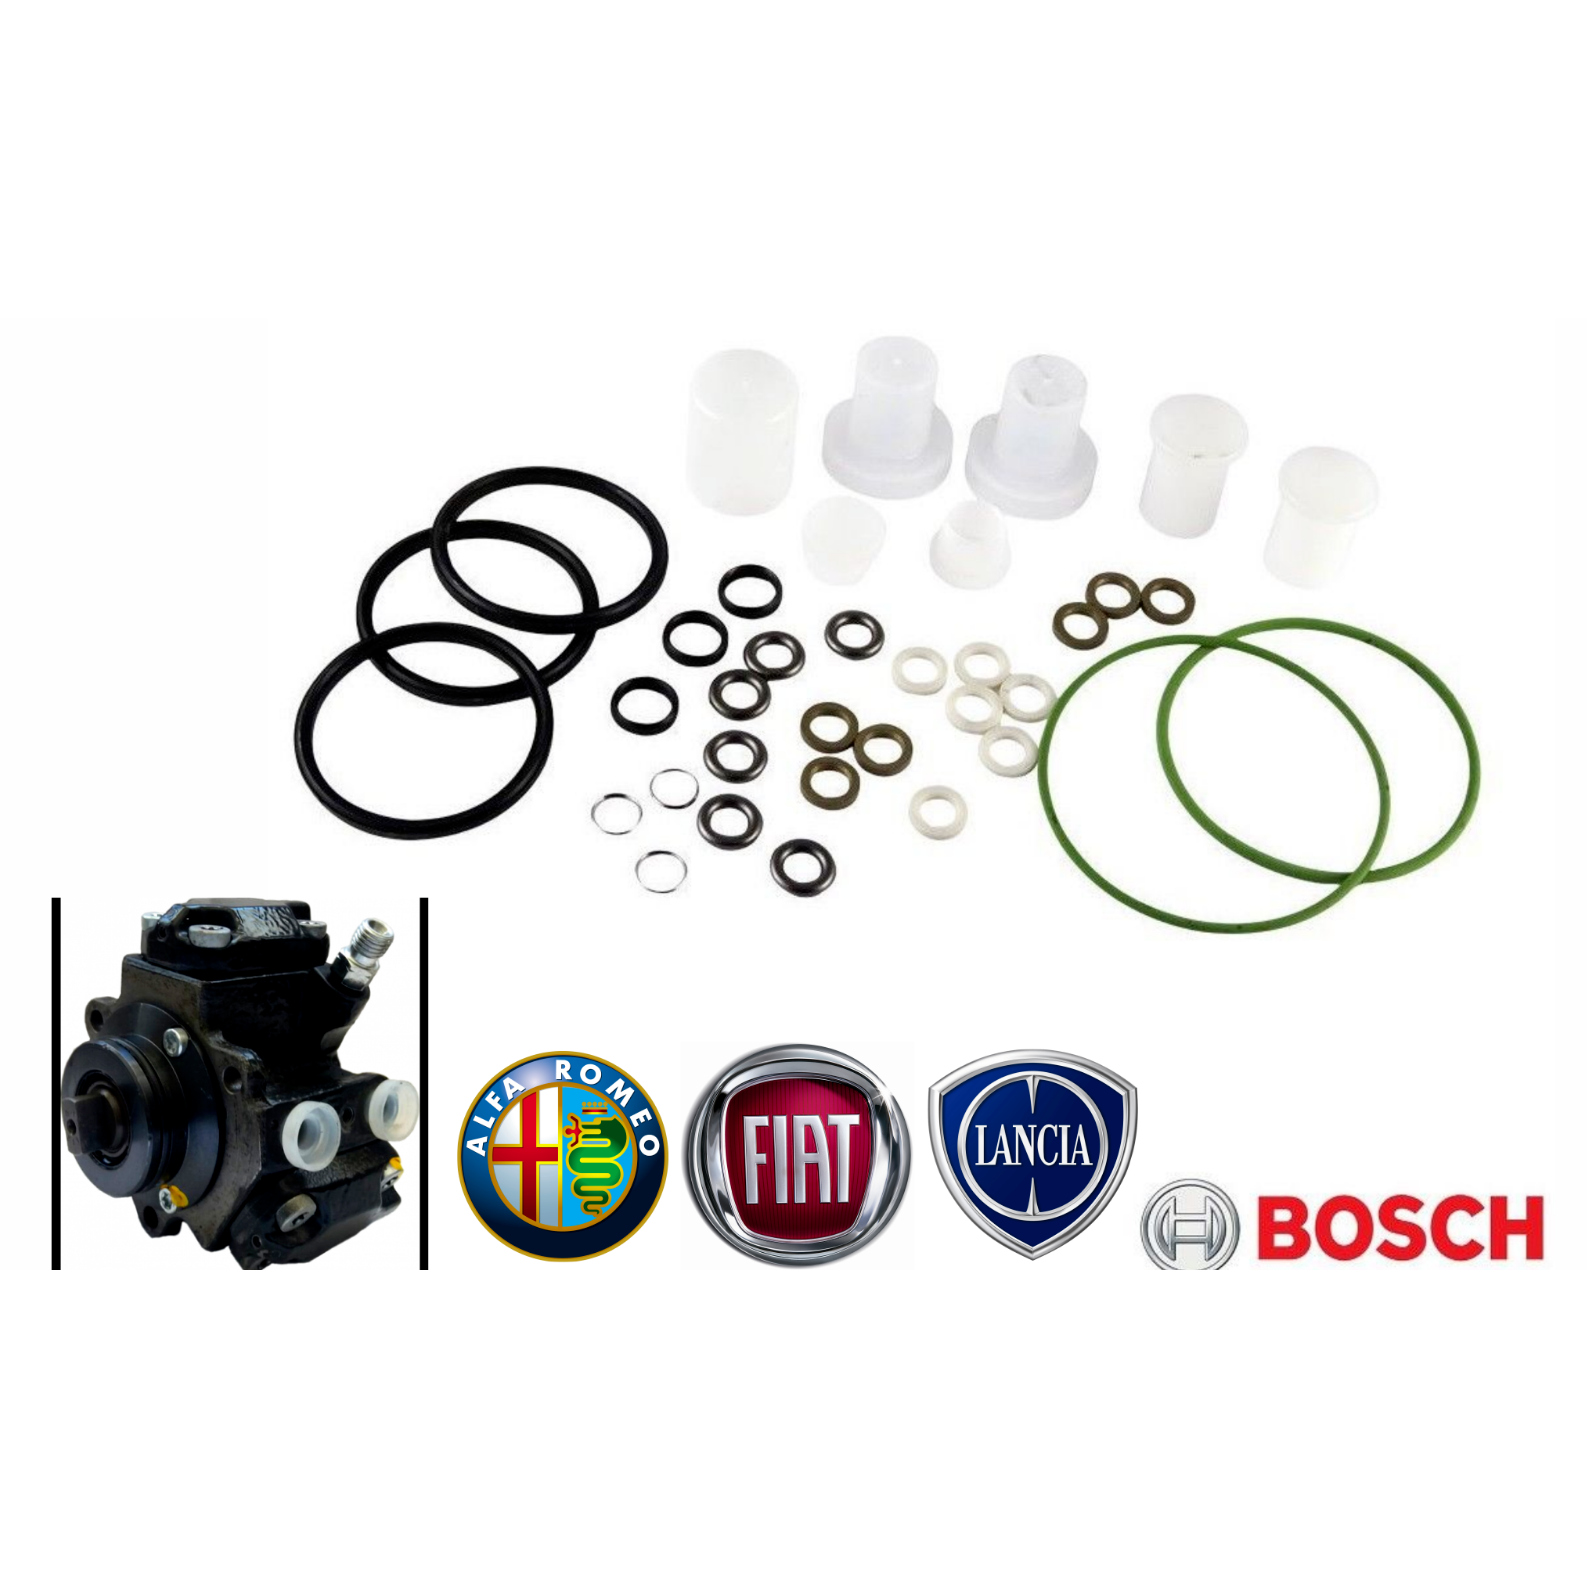 Kit Revisione Originale Bosch Pompa Gasolio Alta Pressione 1.3 Mjet Fiat -  Ricambi F.lli Attianese